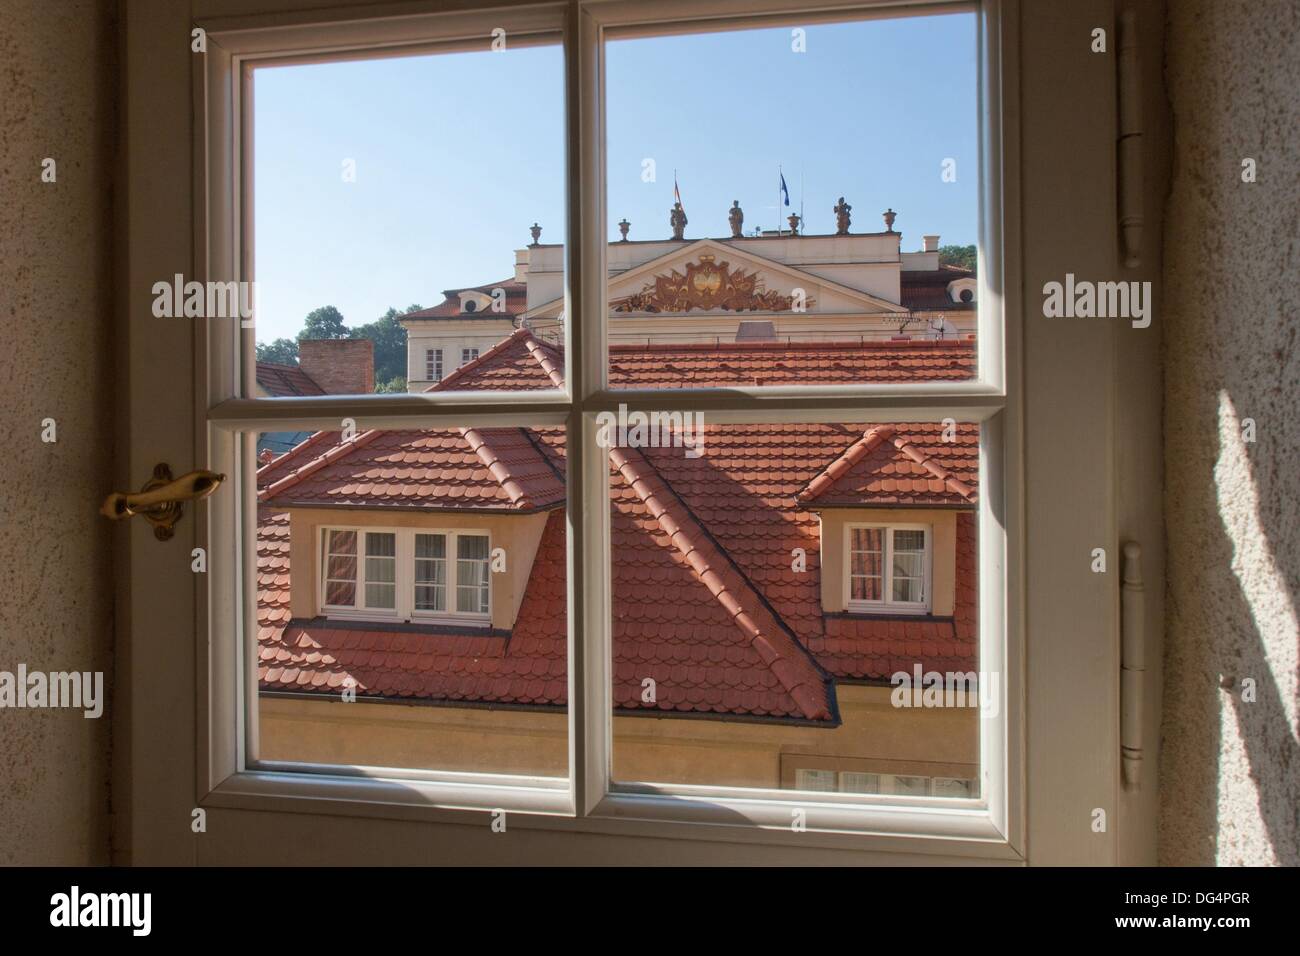 Fenster, Dach und deutsche Botschaft, Mala Strana, Prag, Tschechische  Republik Stockfotografie - Alamy